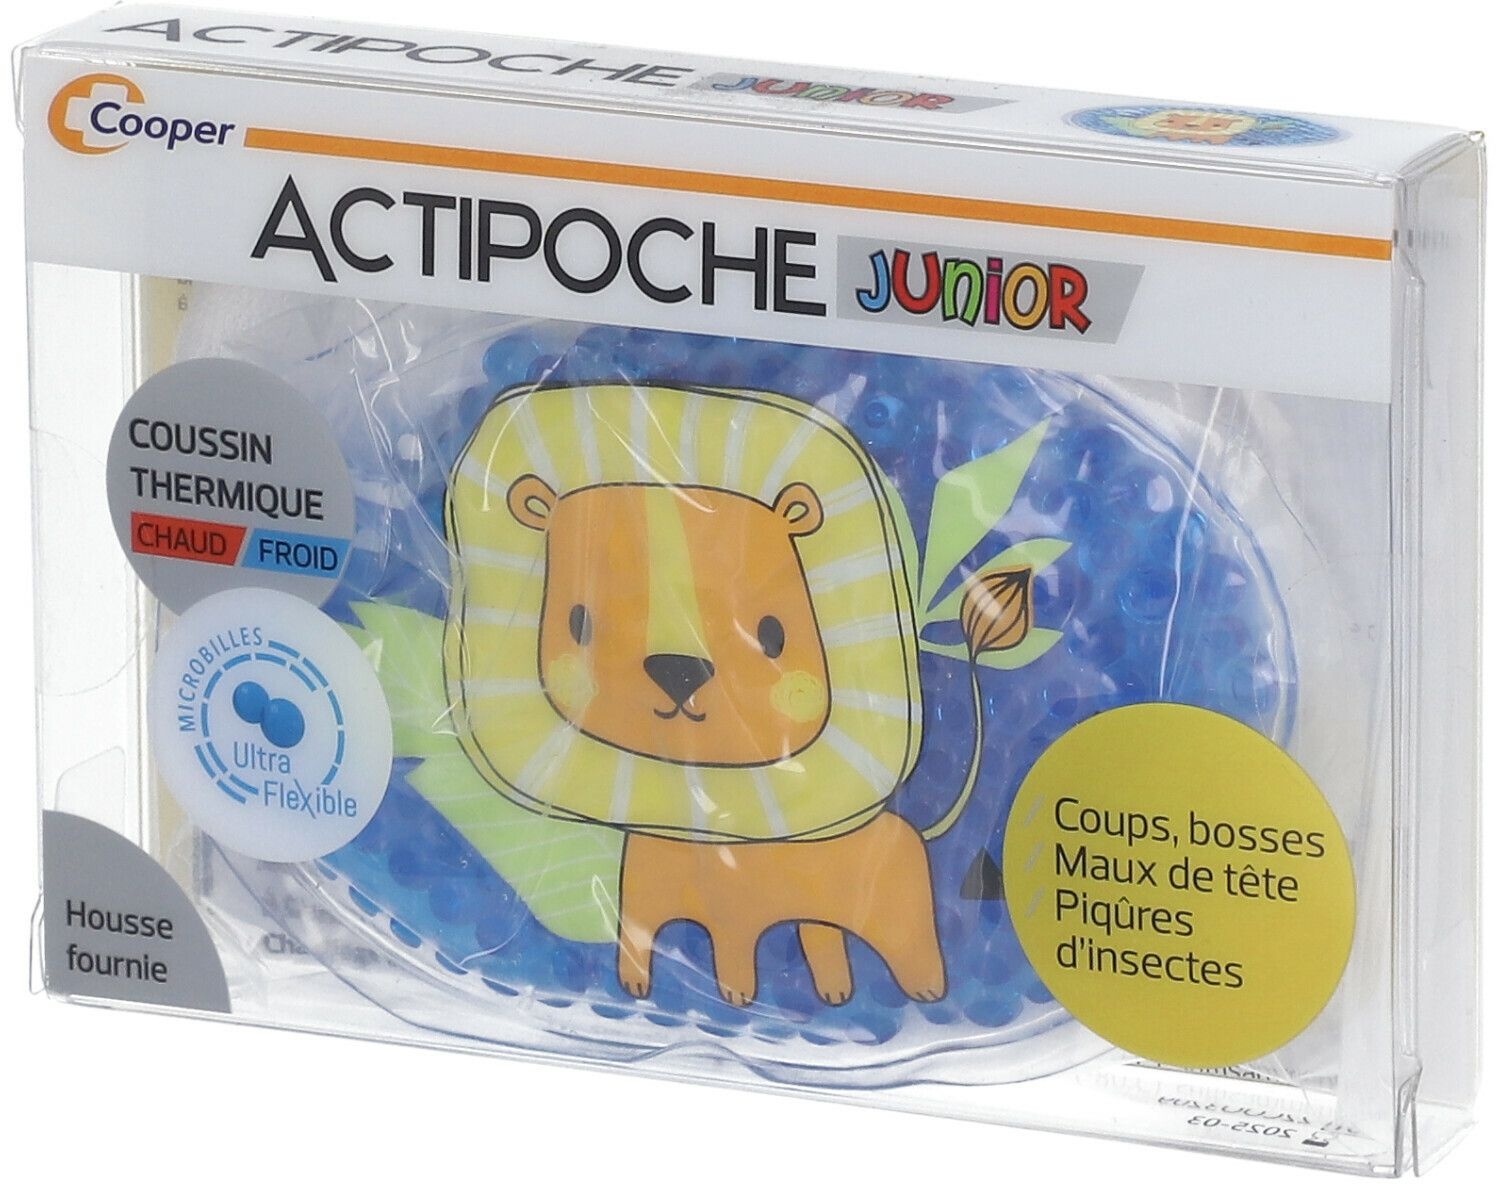 ACTIPOCHE Junior Coussin Thermique Lion Microbilles 1 pc(s) sachet(s)